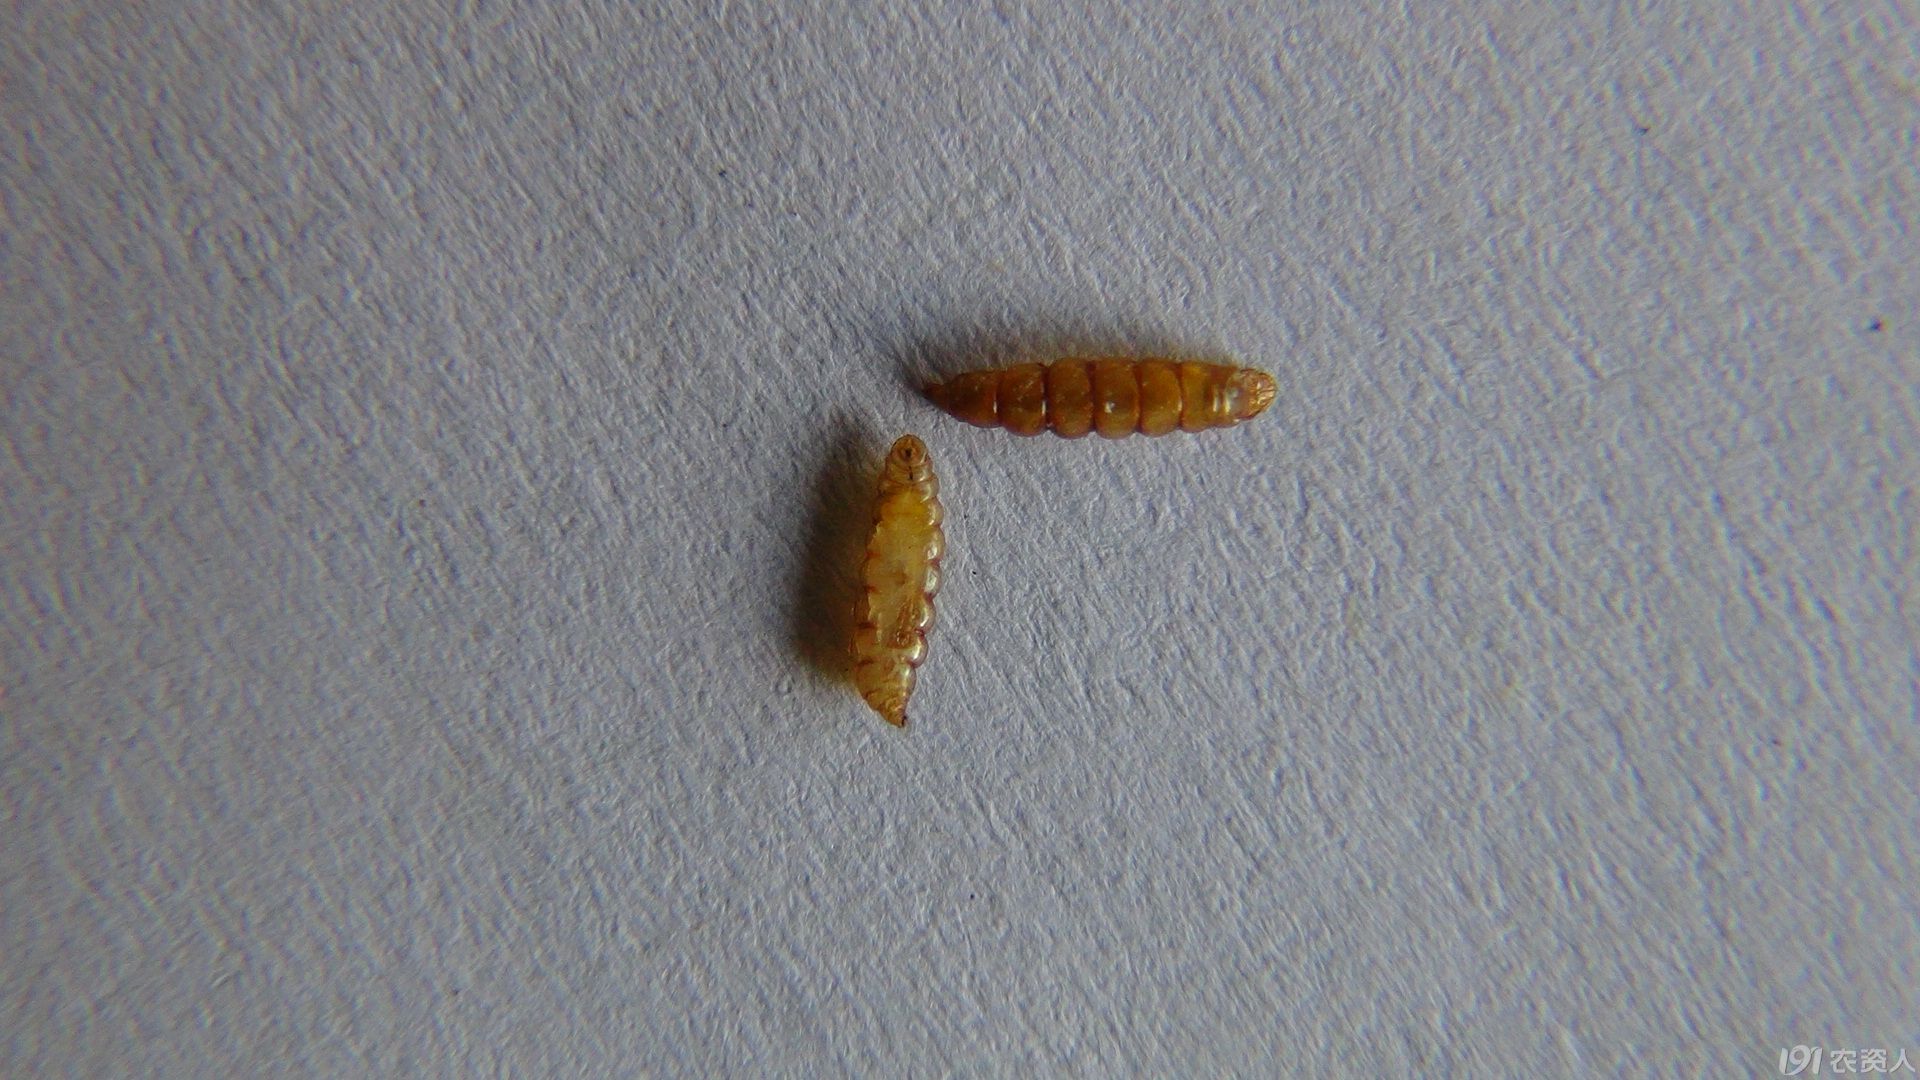 稻秆潜蝇幼虫,蛹形态及为害的叶片和穗苞